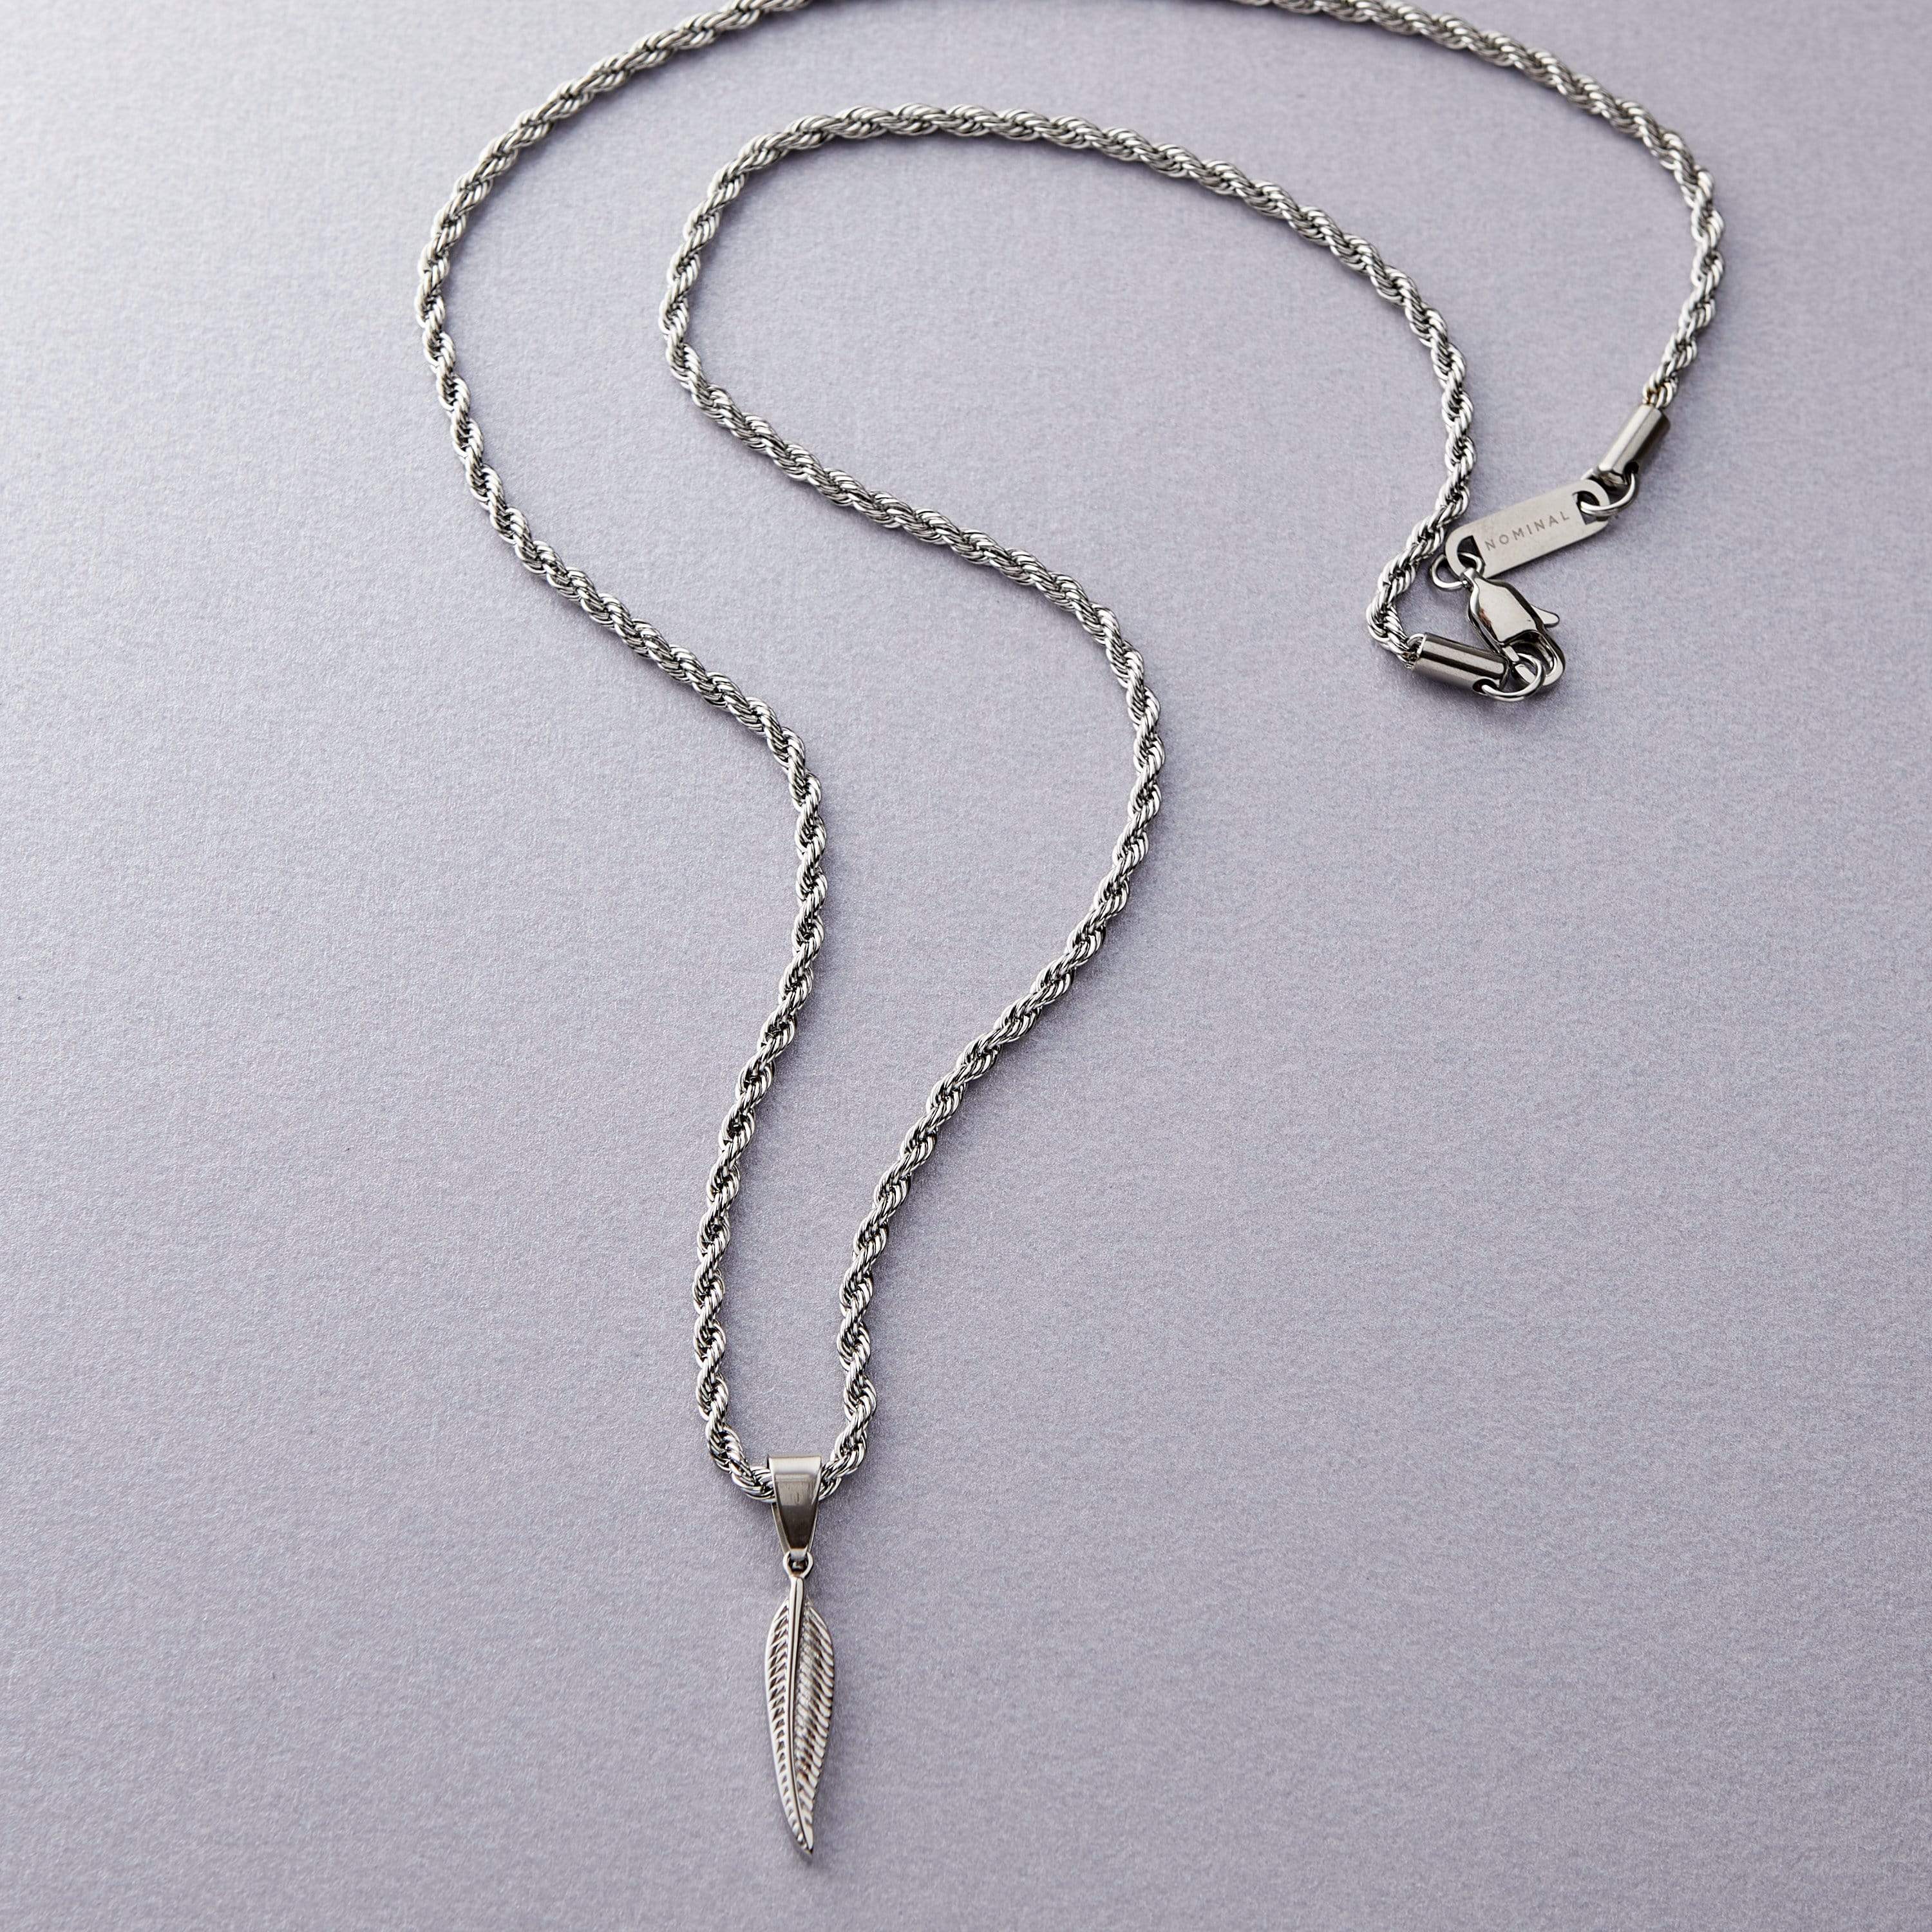 Miniature Feather Necklace | Men - Nominal